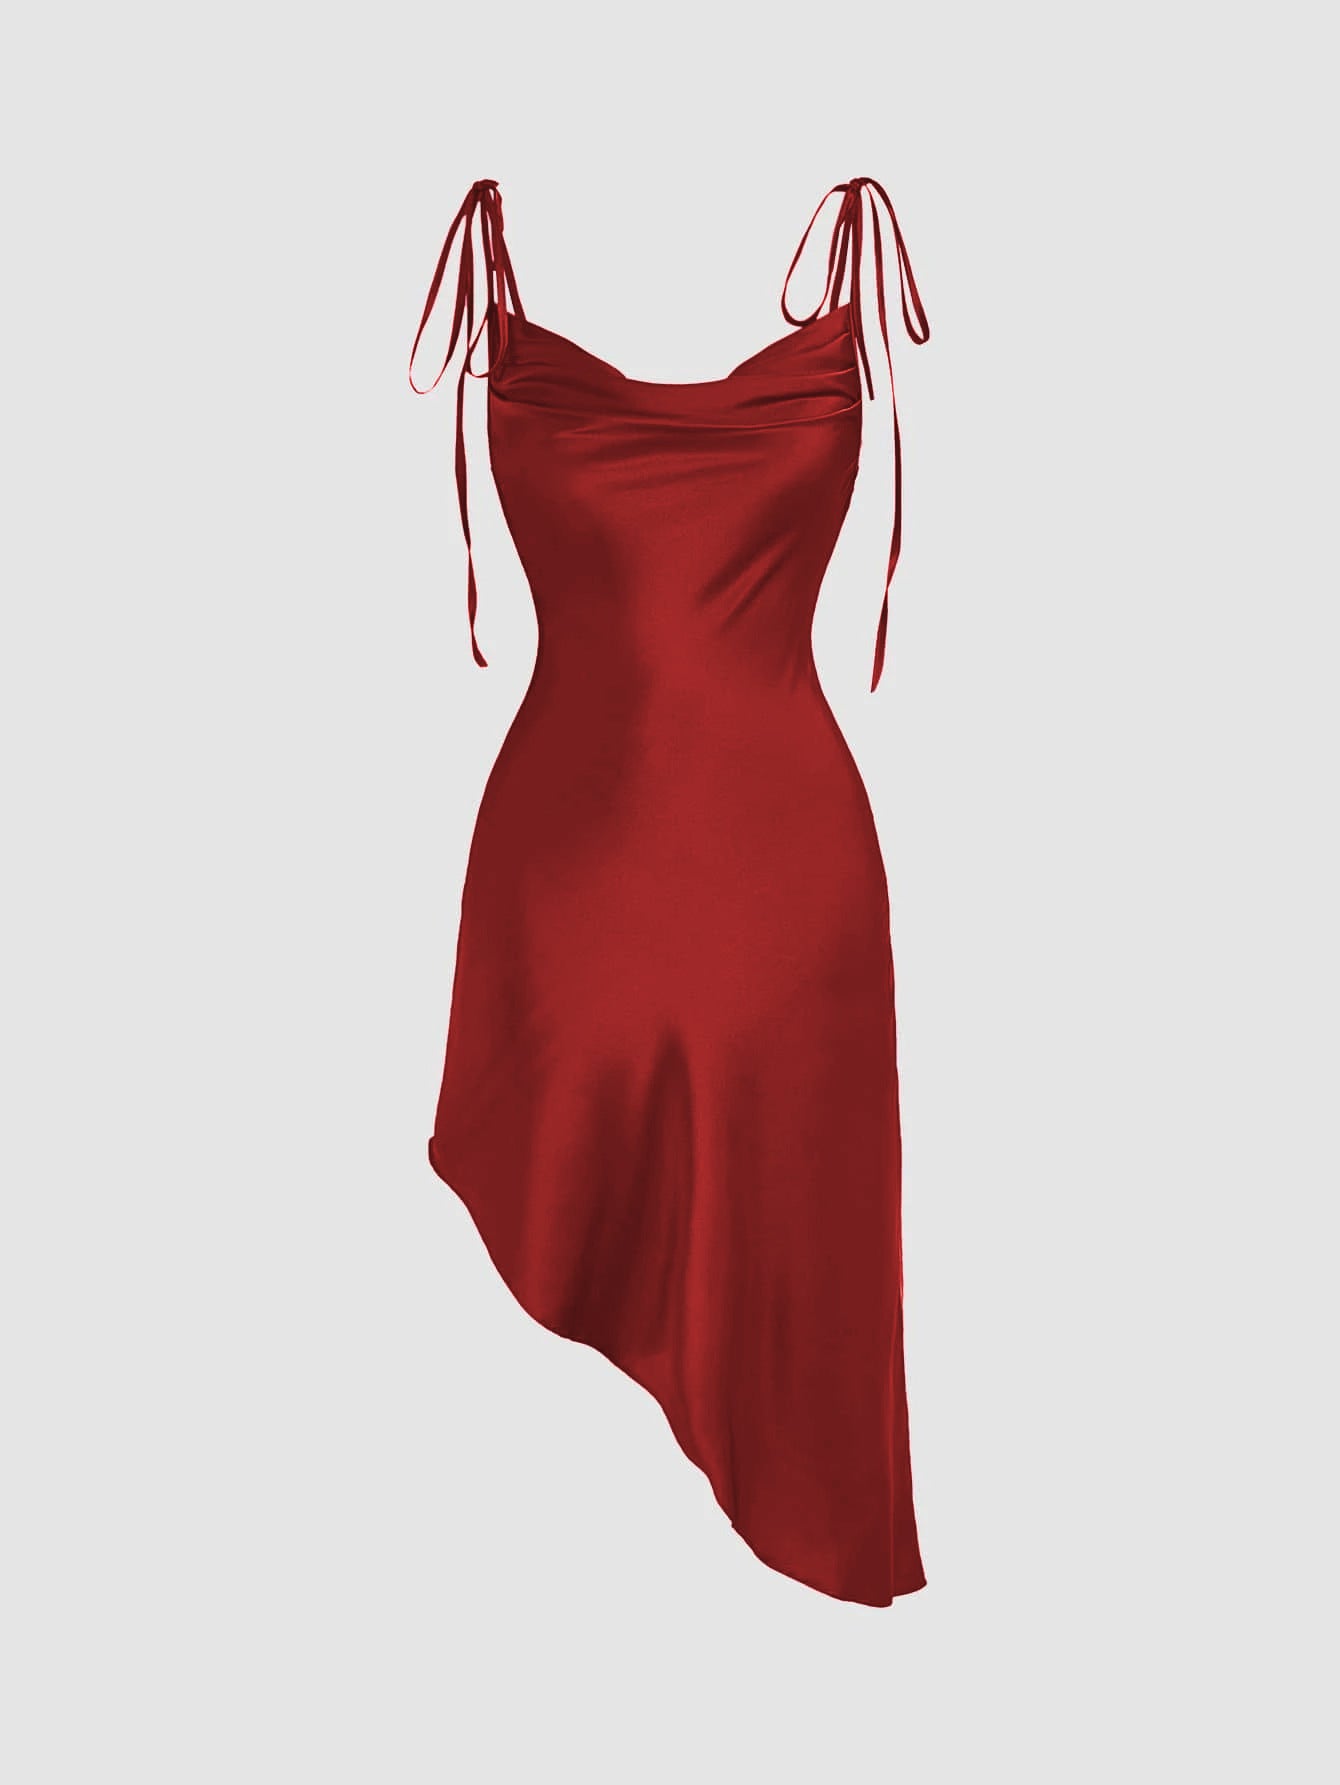 Women's Fashion Satin Suspender Dress